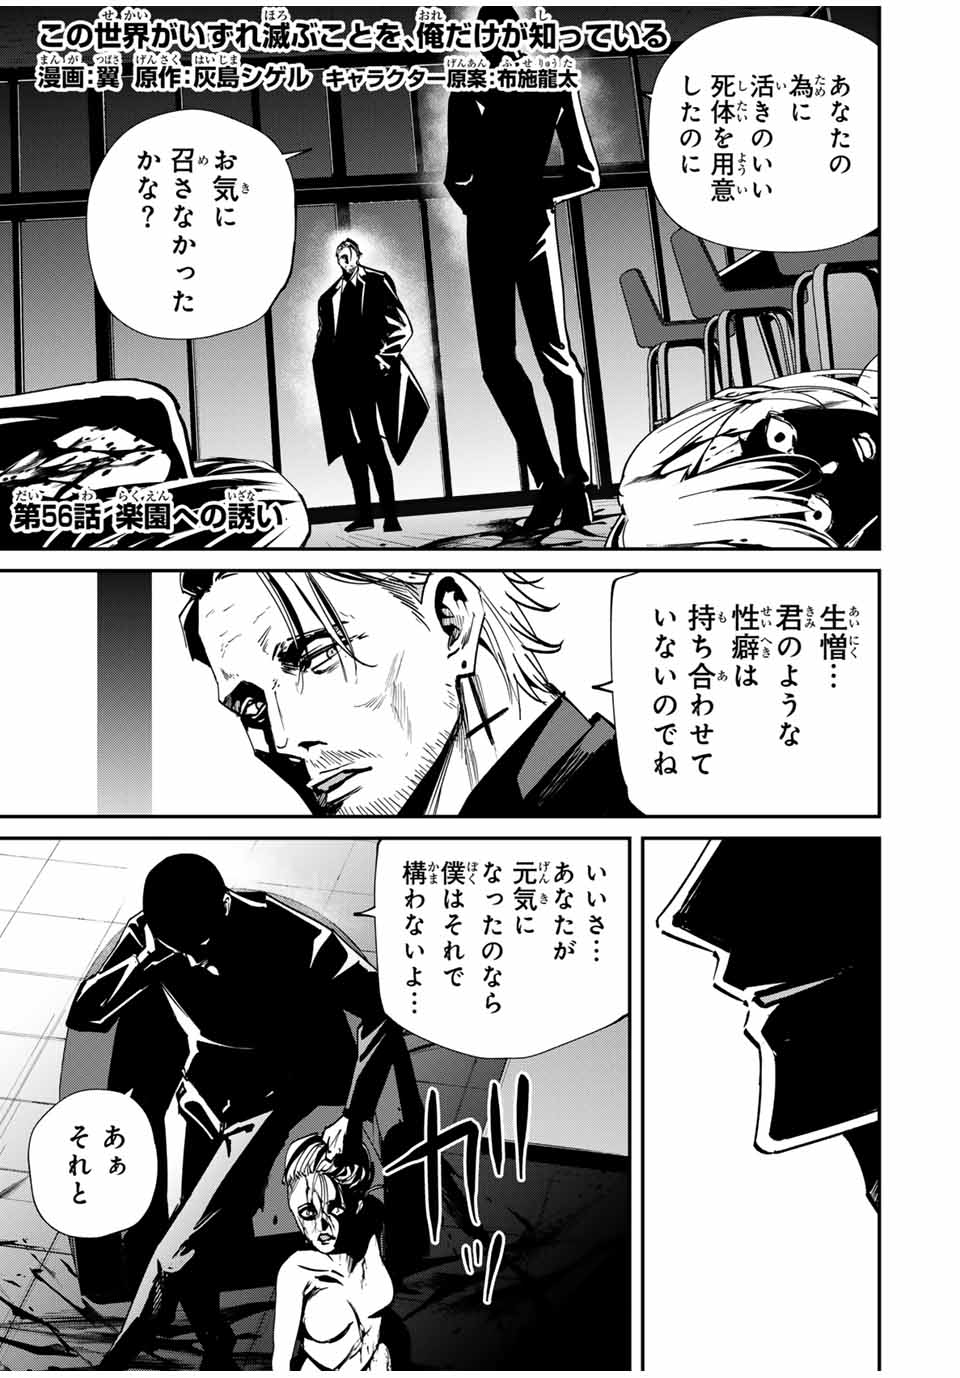 Kono Sekai ga Izure Horobu Koto wo, Ore dake ga Shitte Iru - Chapter 56 - Page 1